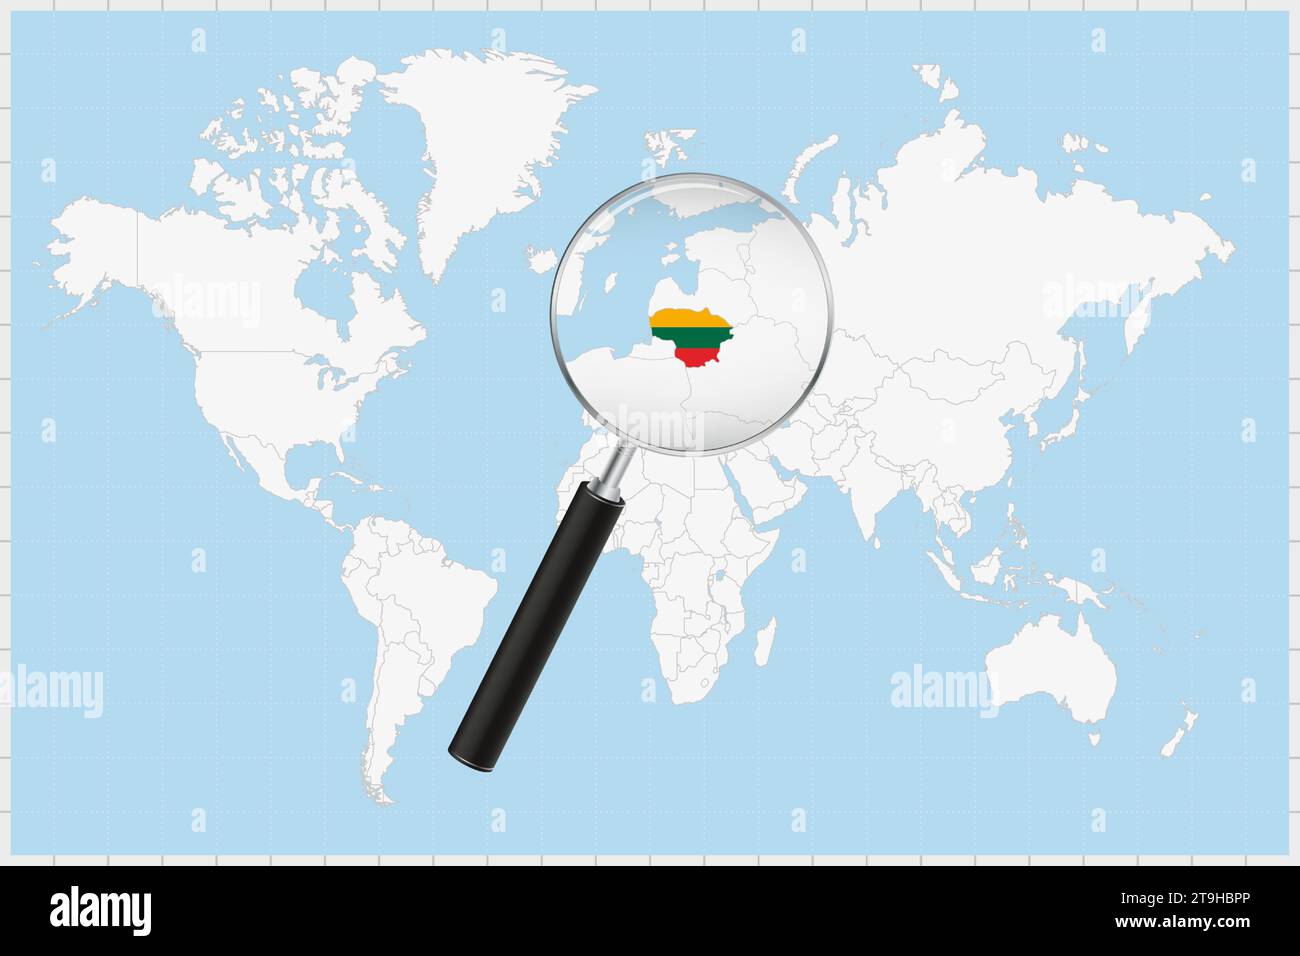 Lente d'ingrandimento che mostra una mappa della Lituania su una mappa del mondo. La bandiera e la mappa della Lituania si ingrandiscono nell'obiettivo. Illustrazione vettoriale. Illustrazione Vettoriale